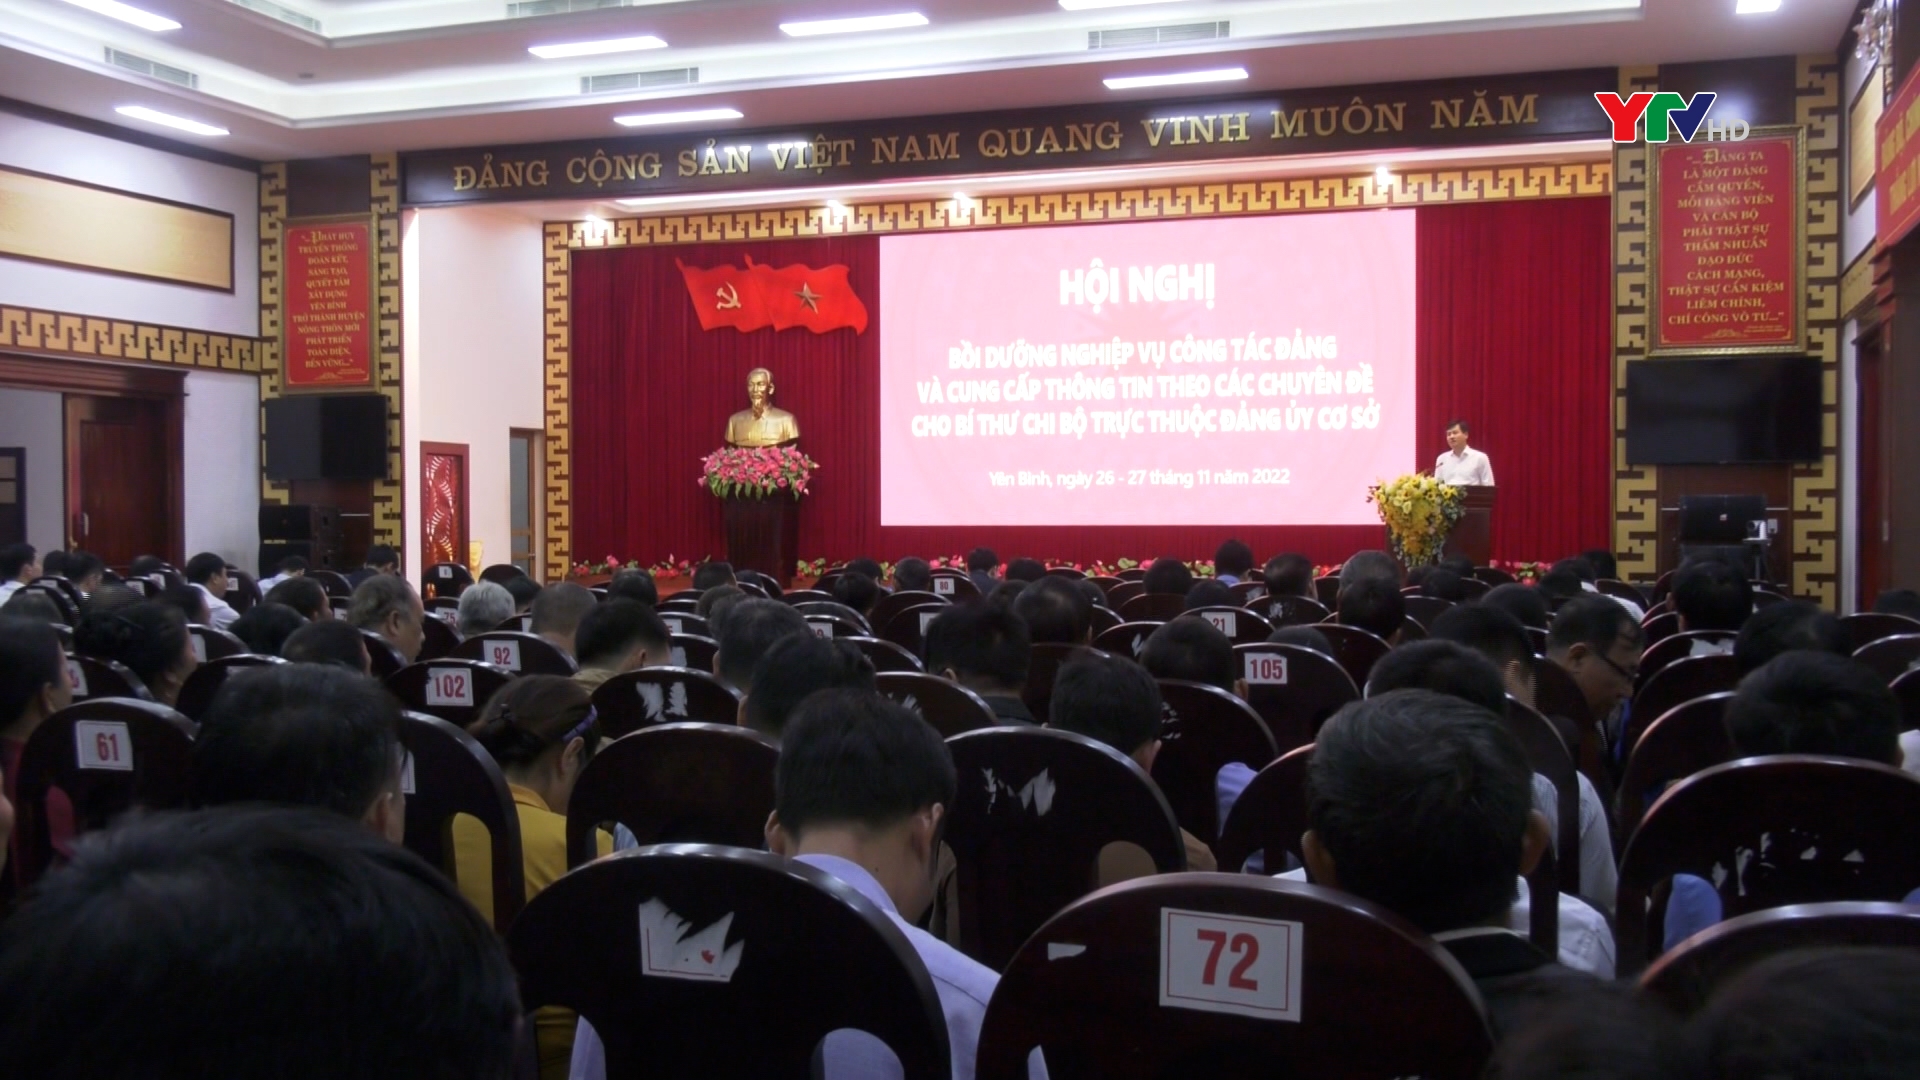 Đồng chí Phó chủ tịch UBND tỉnh Ngô Hạnh Phúc dự Hội nghị bồi dưỡng nghiệp vụ công tác Đảng tại huyện Yên Bình